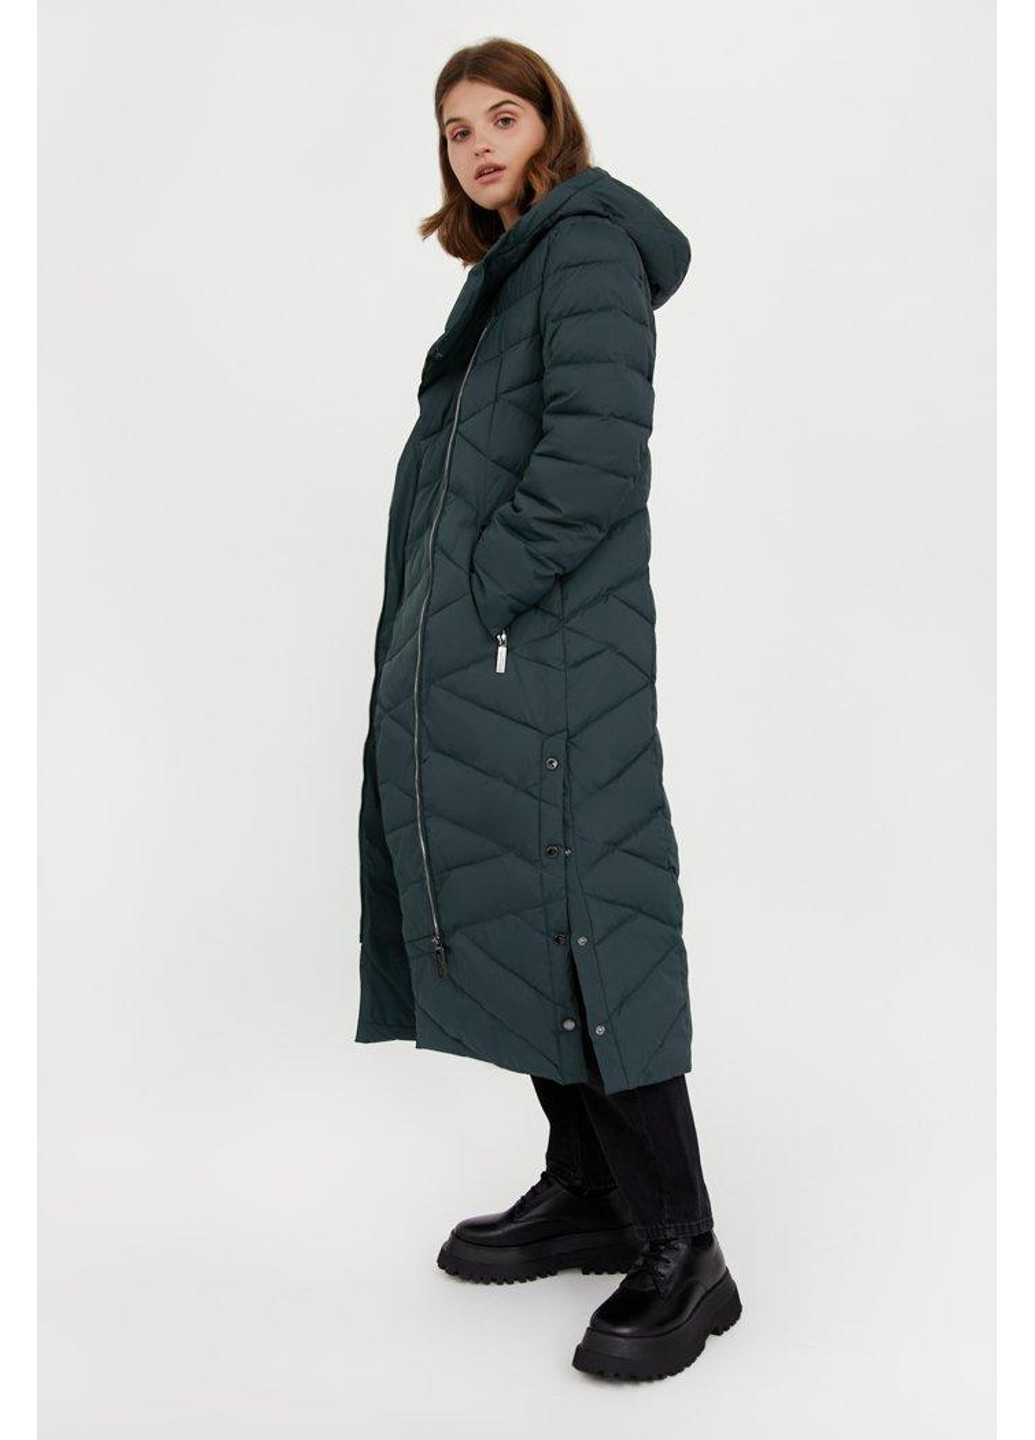 Зелена зимня зимова куртка va20-11009-506 Finn Flare